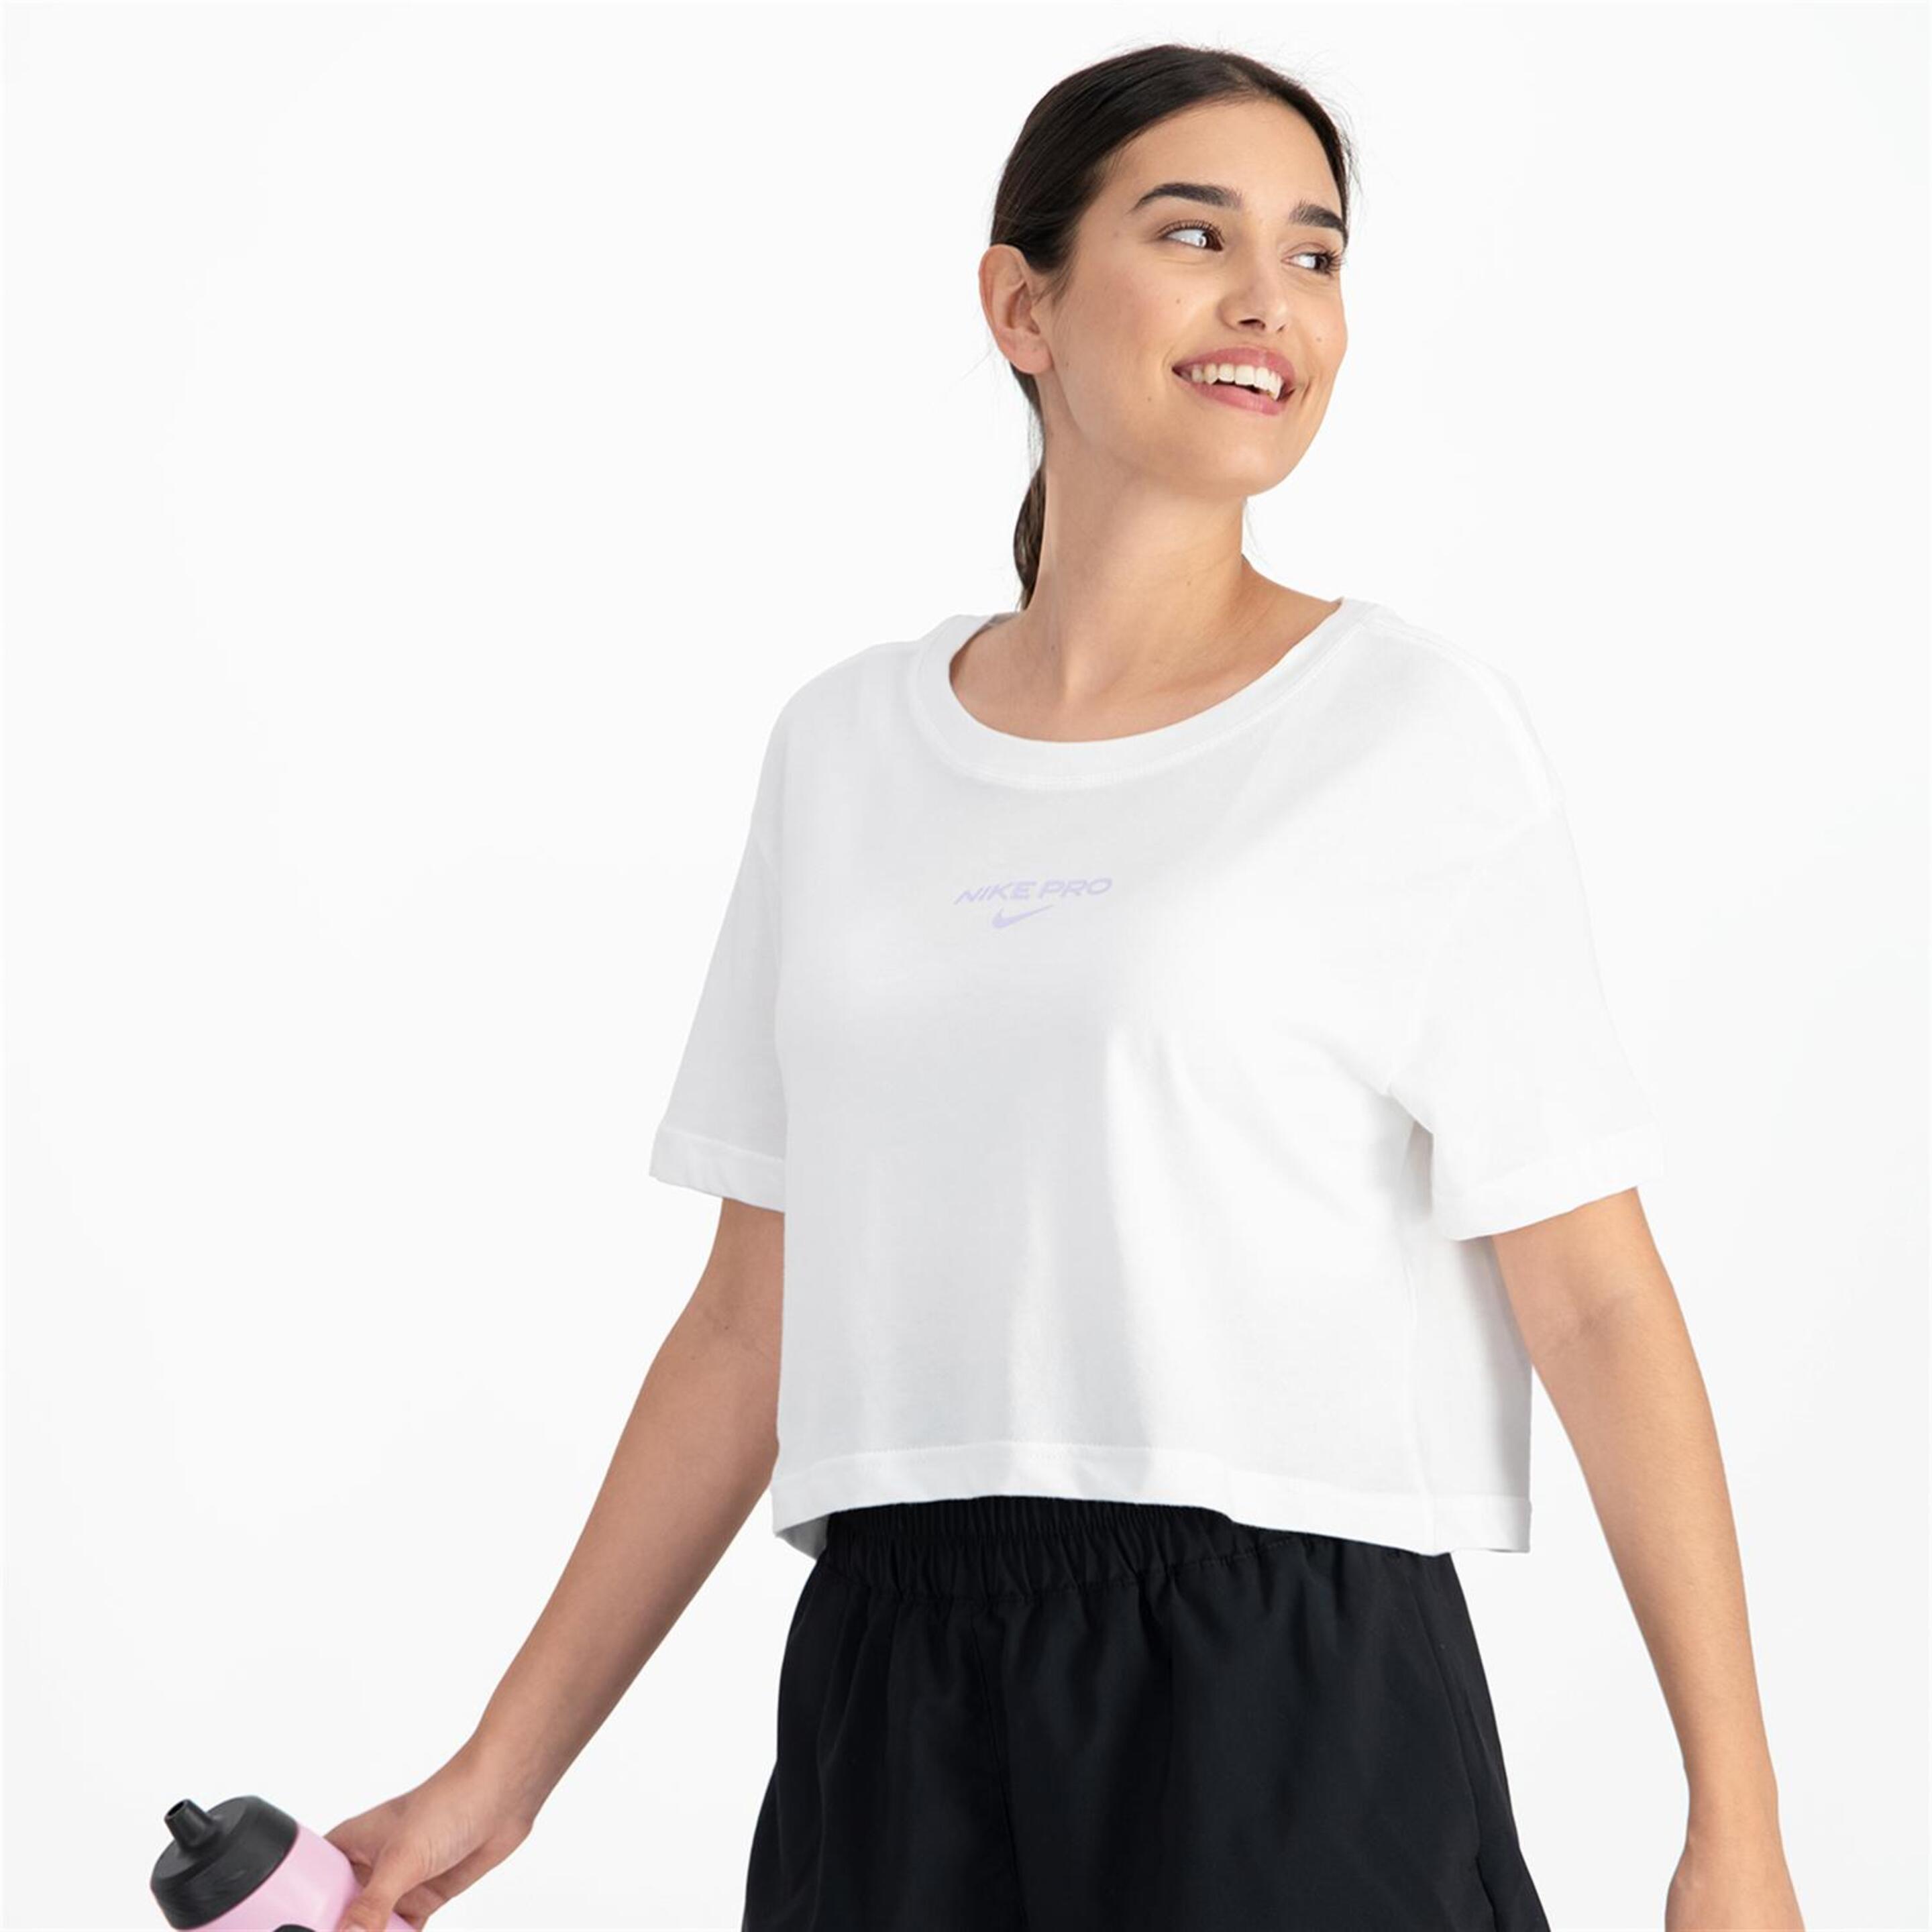 Nike Pro - Blanco - Camiseta Boxy Mujer